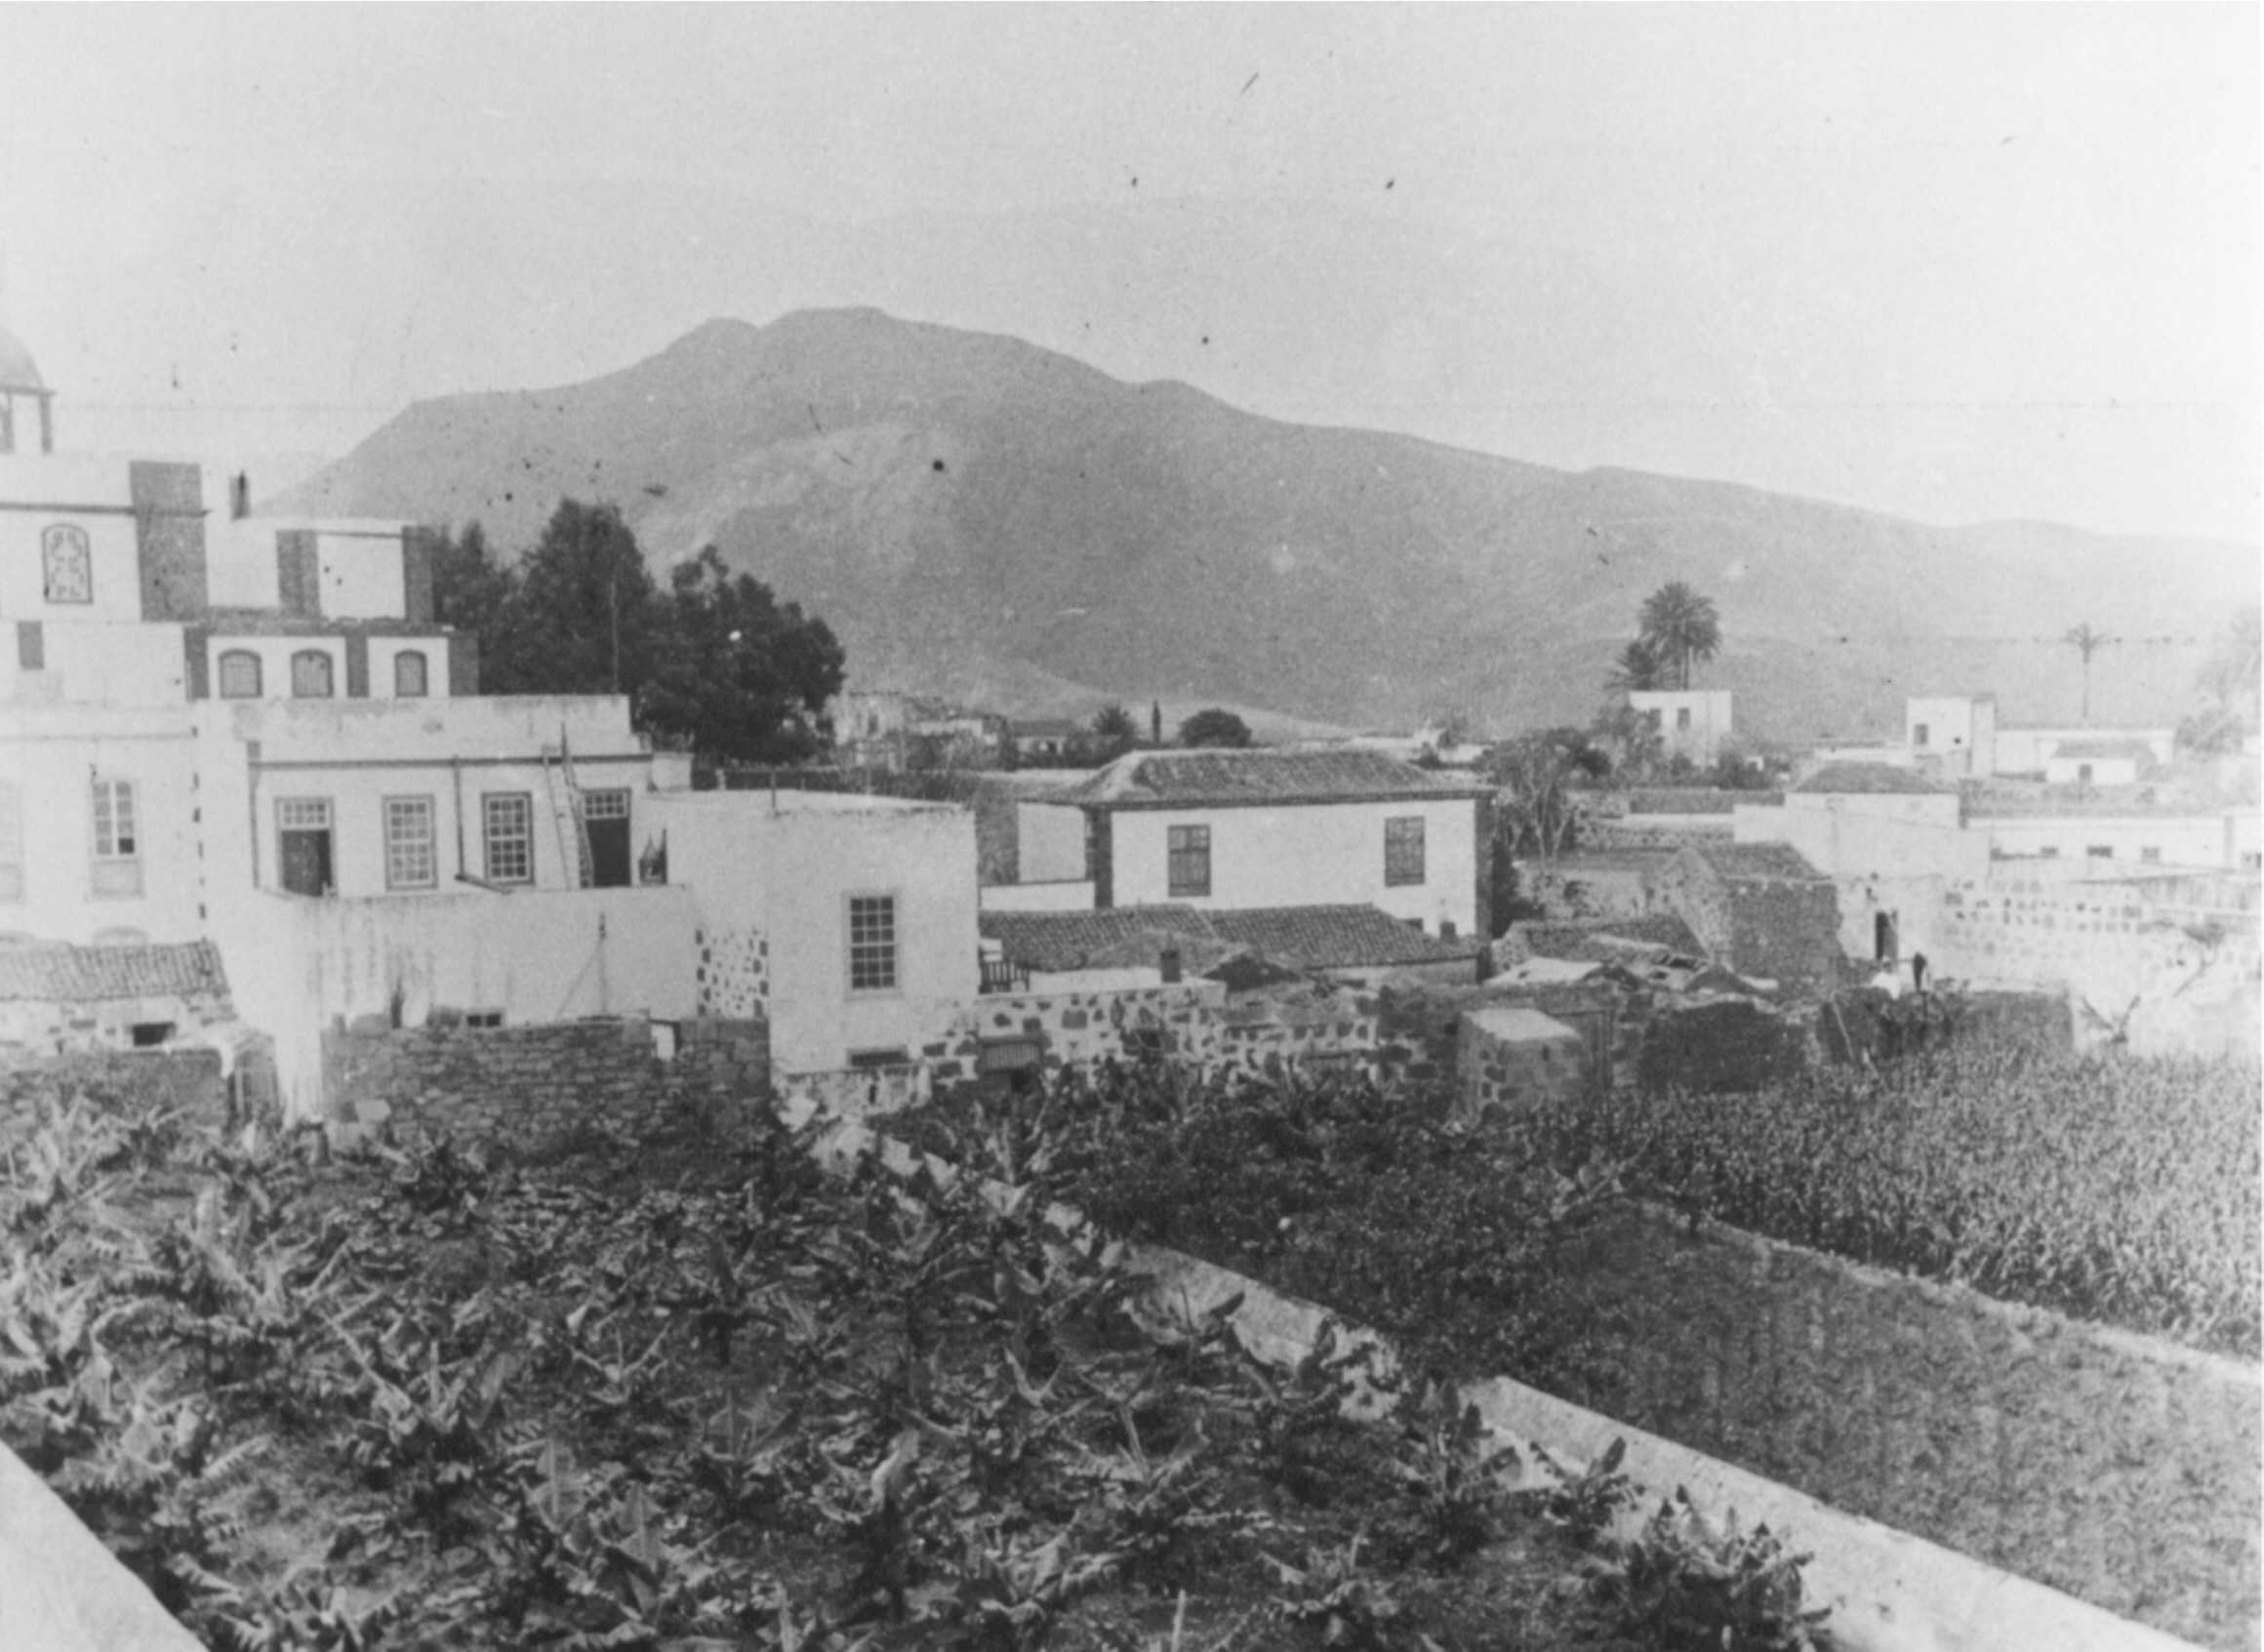 Alrededores de la Iglesia de Santiago con la montaña de Almagro al fondo,
en los años veinte.